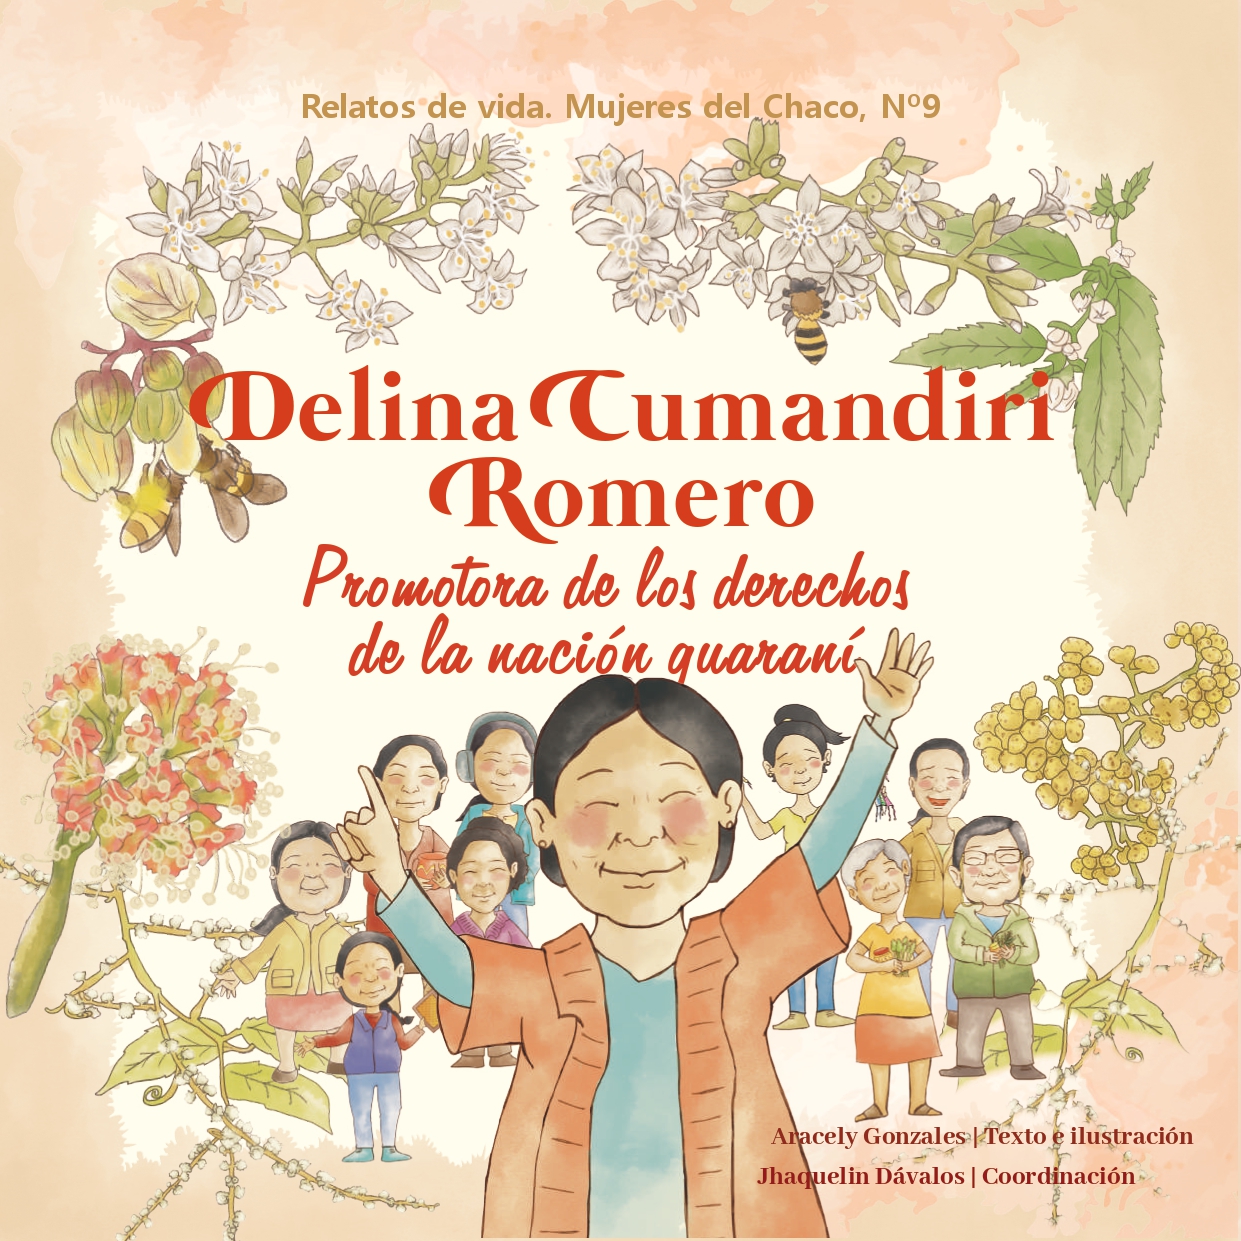 Delina Cumandiri Romero, promotora de los derechos de la nación guaraní